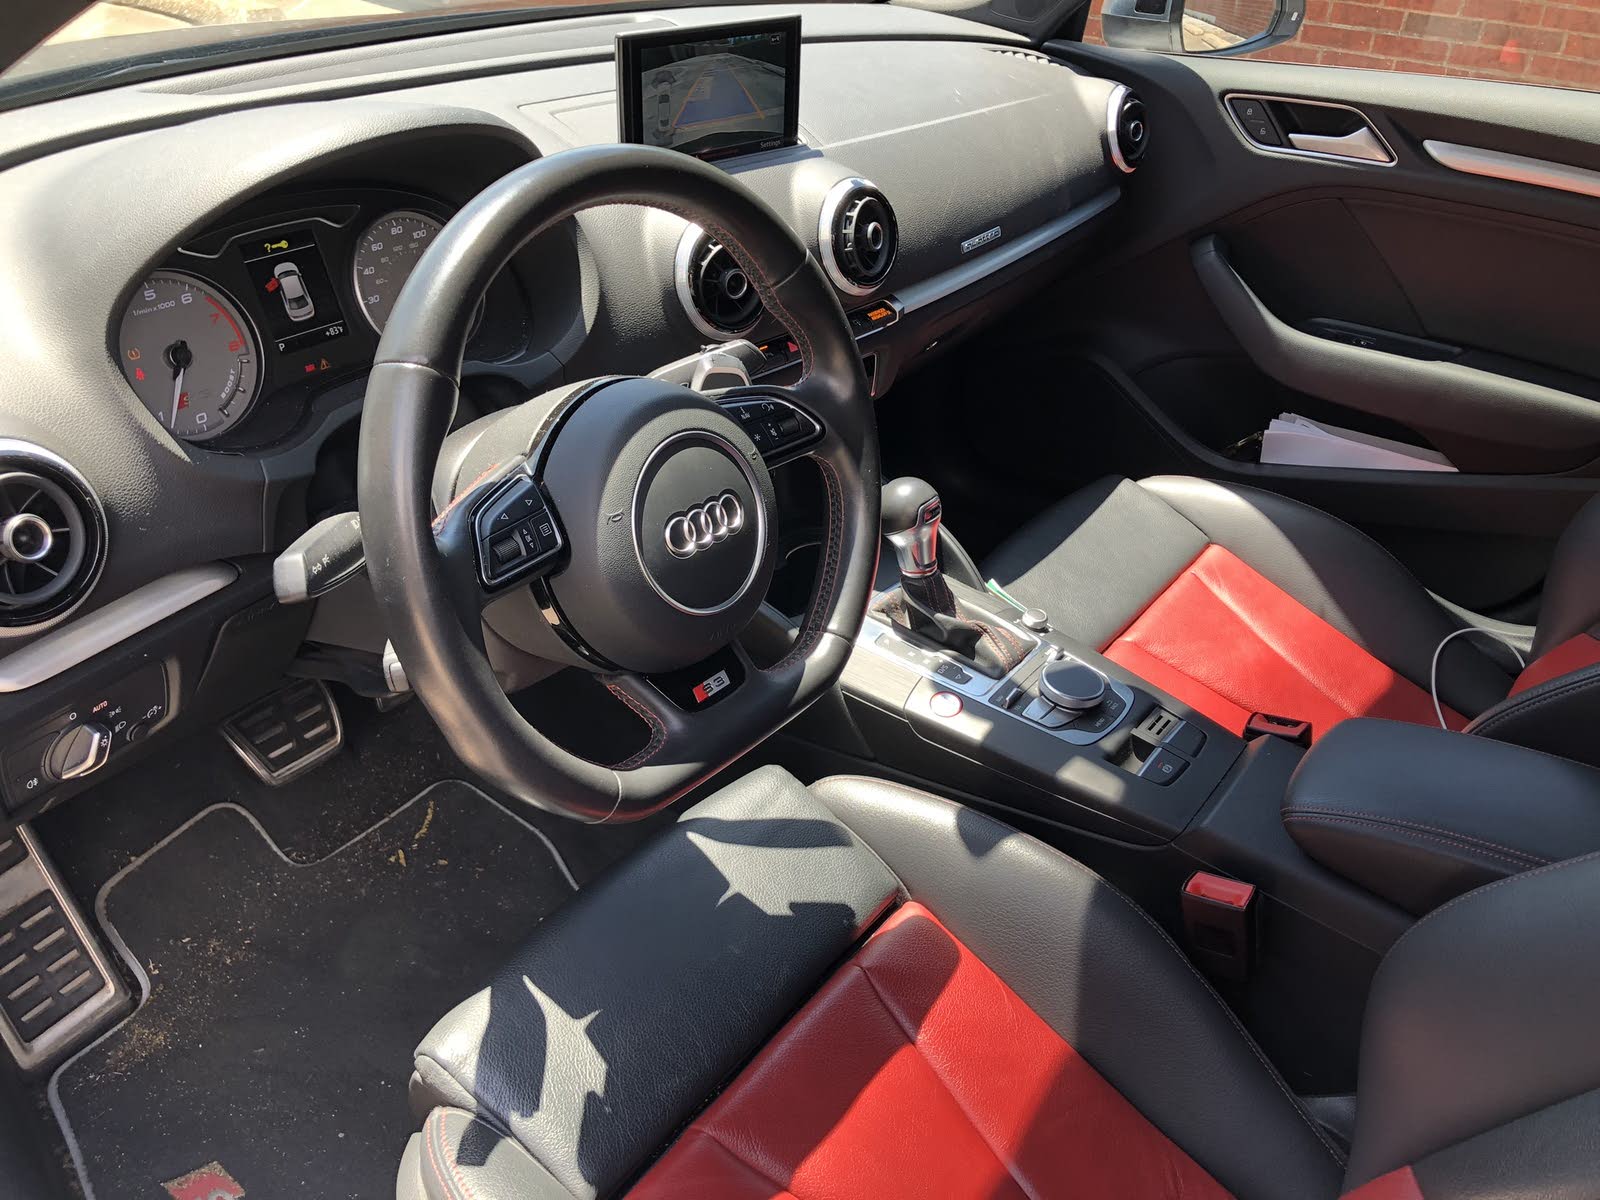 2015 Audi S3 Interior Pictures Cargurus